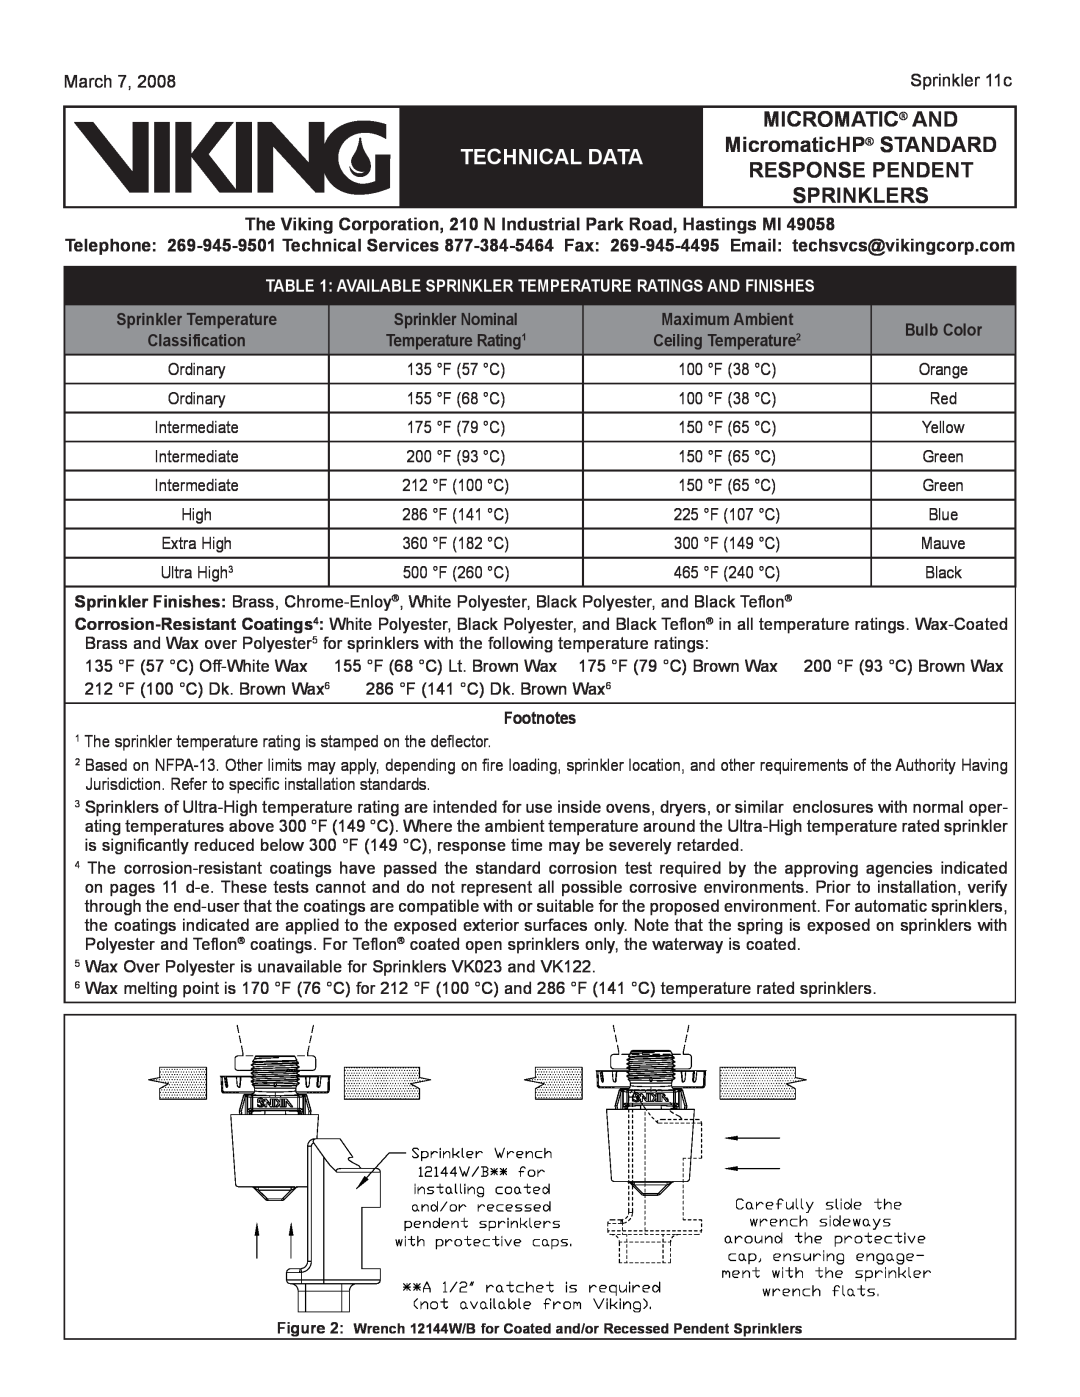 Viking Sprinkler 11a Sprinkler Temperature, Sprinkler Nominal, Maximum Ambient, Bulb Color, Footnotes, Sprinklers 